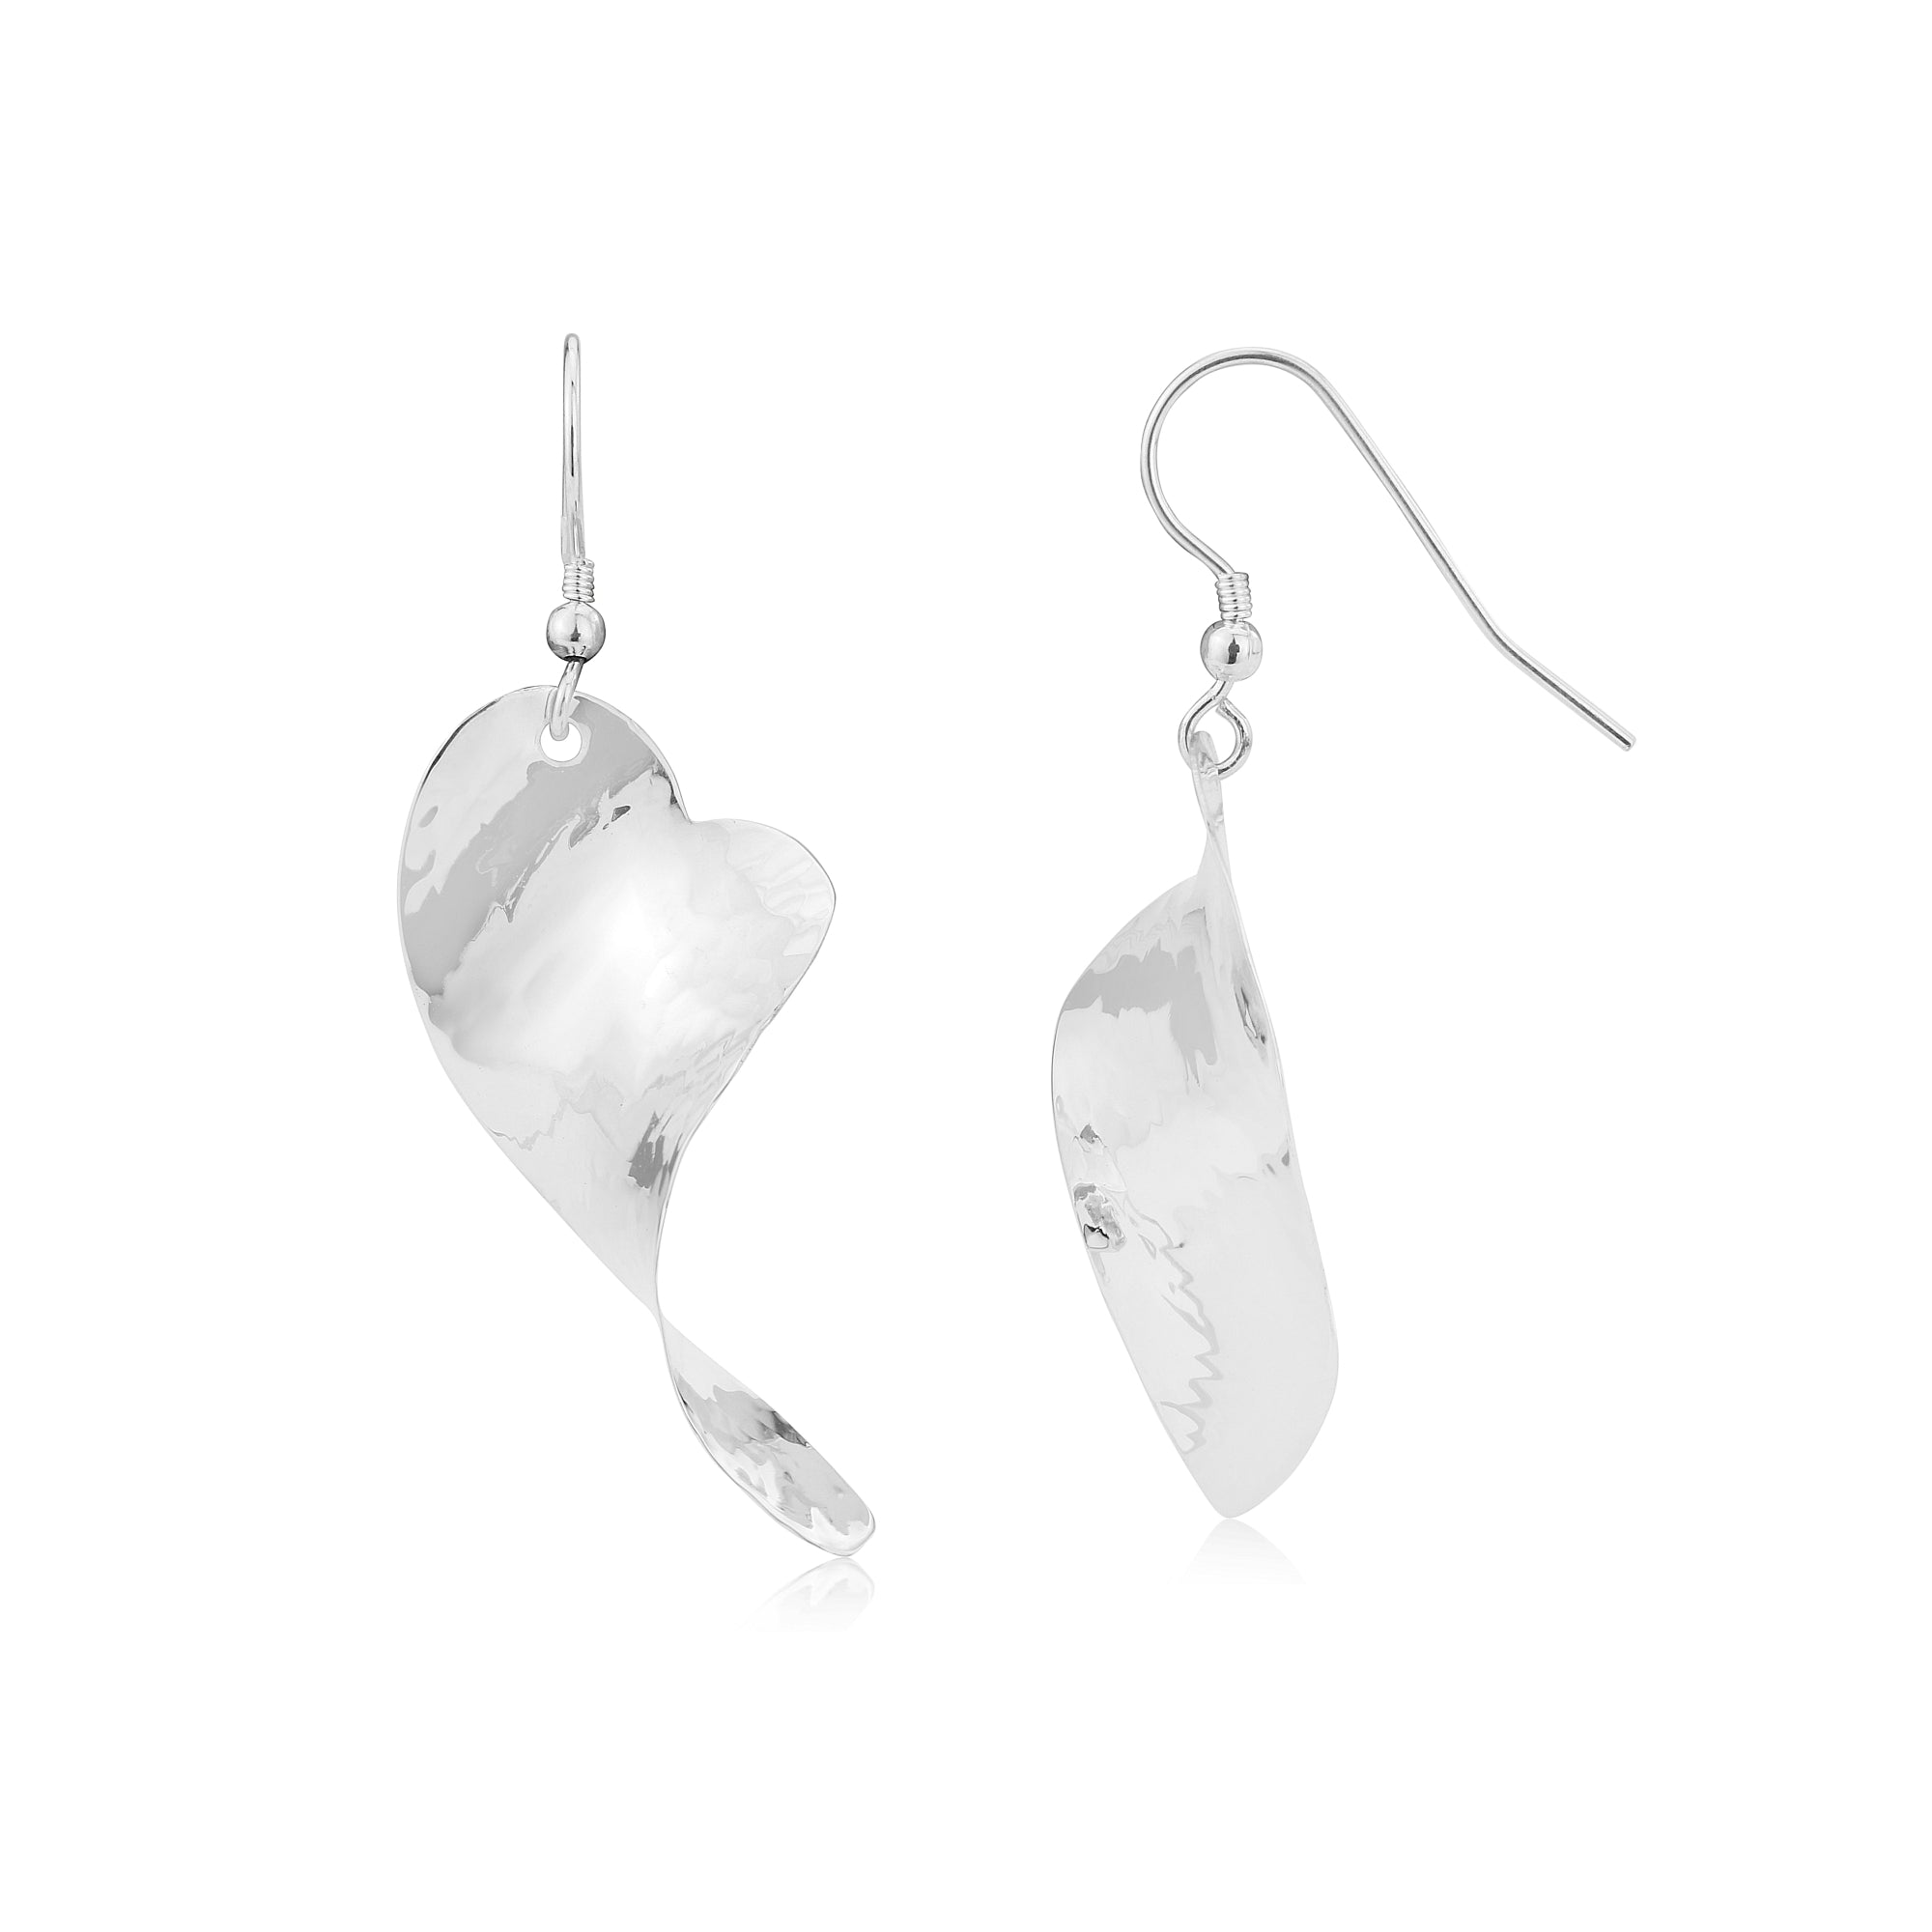 Handmade Silver Twisted Heart Earrings